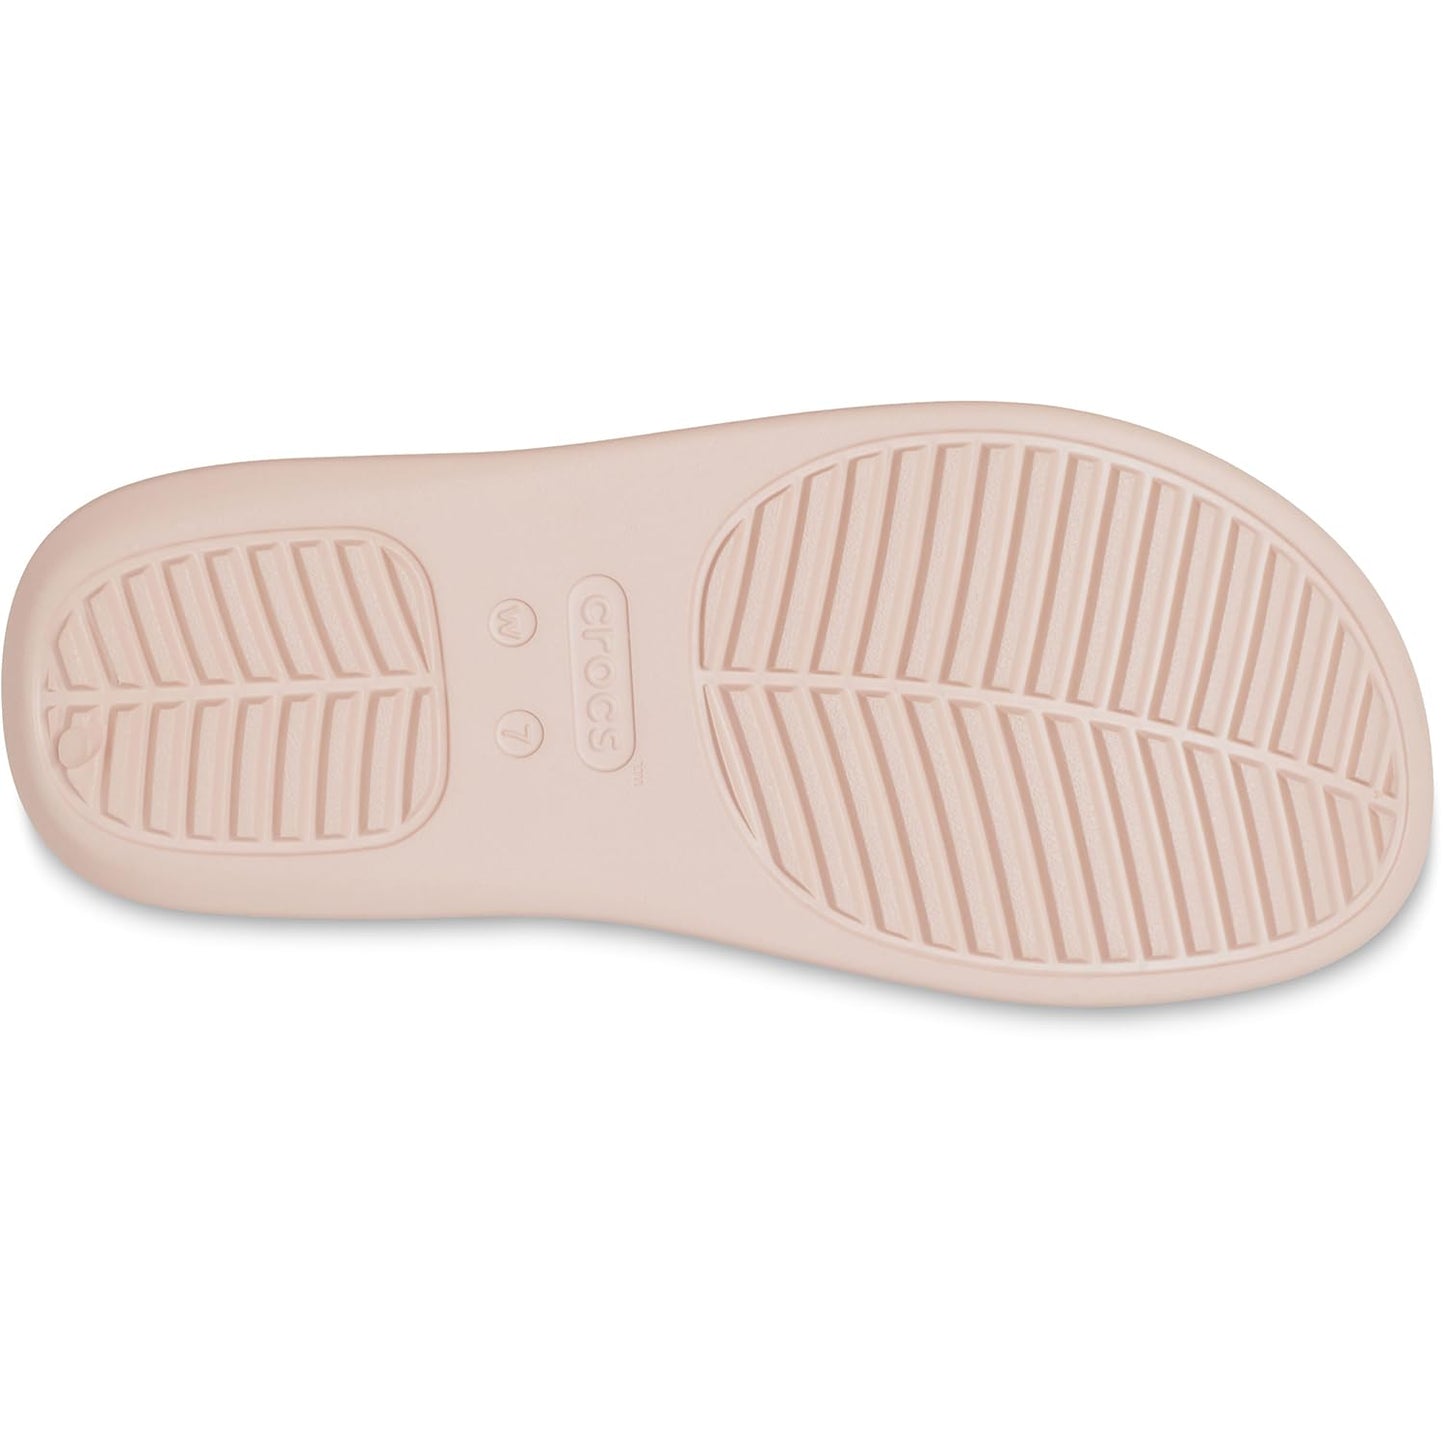 Crocs Women's Getaway Platform Flip Flops, Wedge Sandals for Women, Quartz, 4 Women